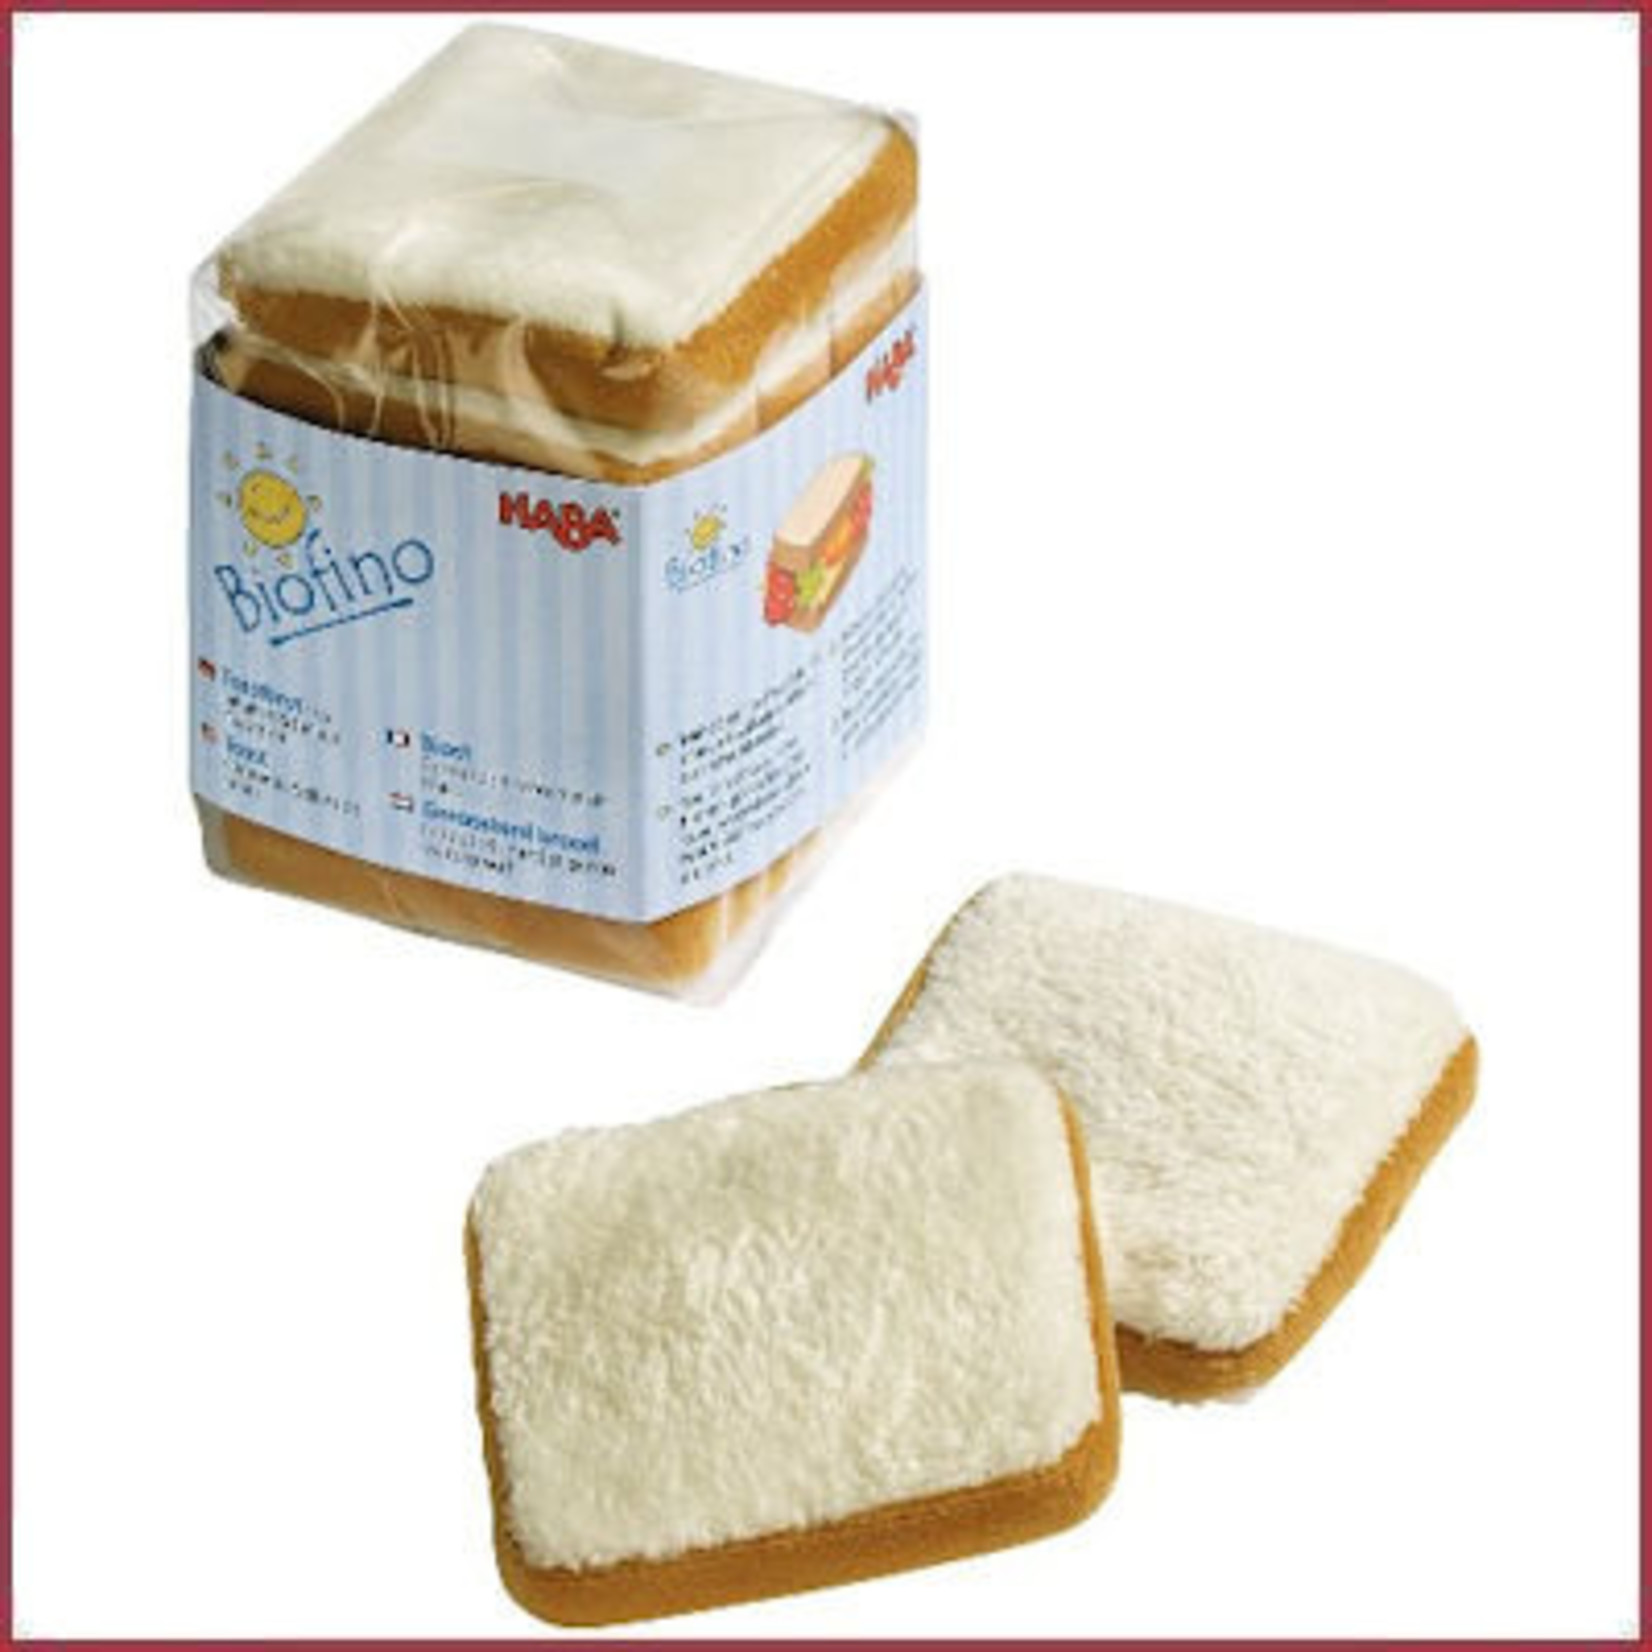 Haba Biofino Toast